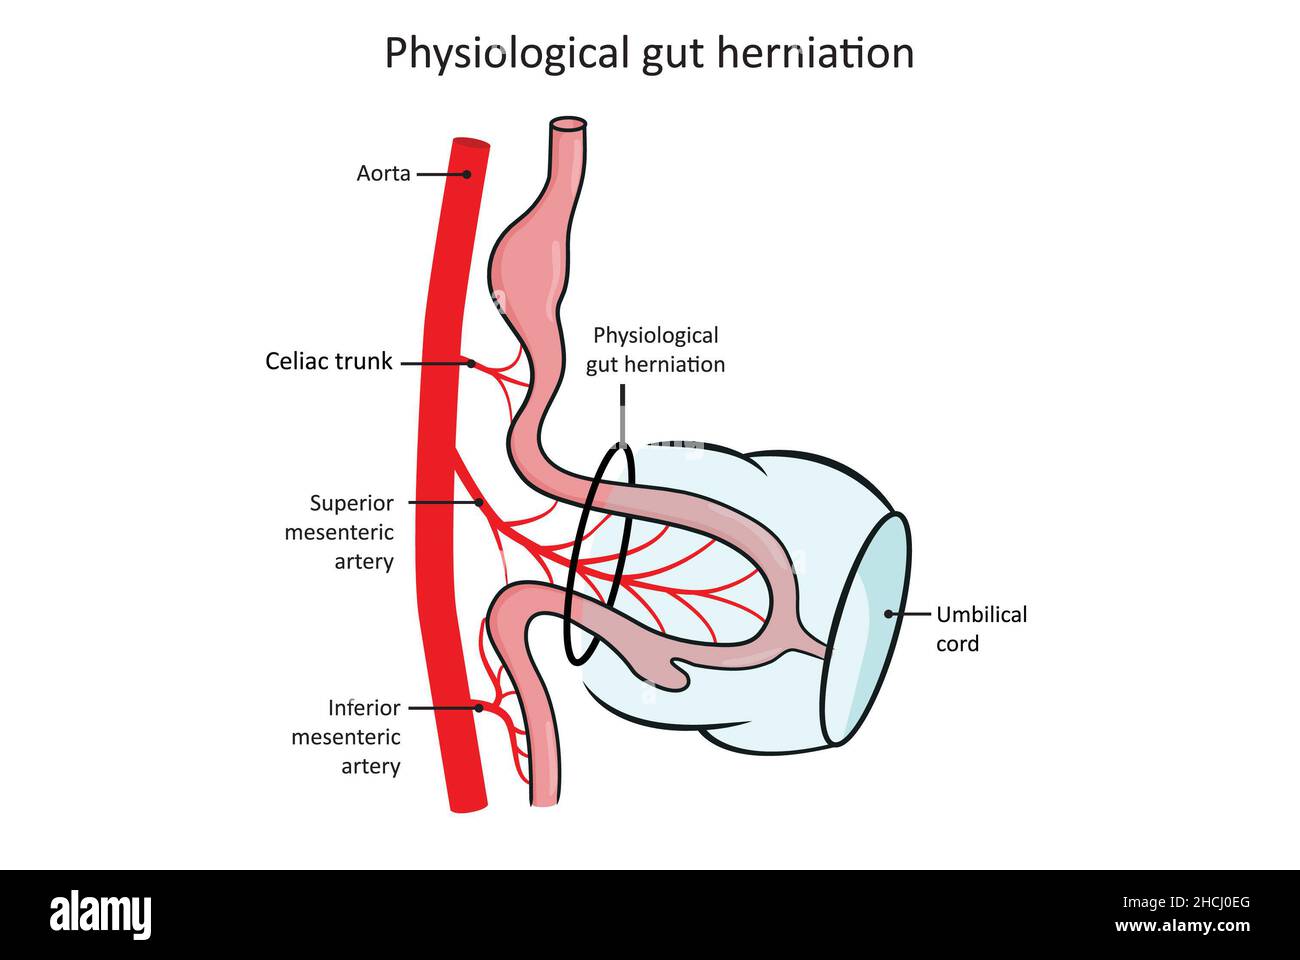 Fisiologica erniazione intestinale, sviluppo del tratto gastrointestinale (alimentare). Foto Stock